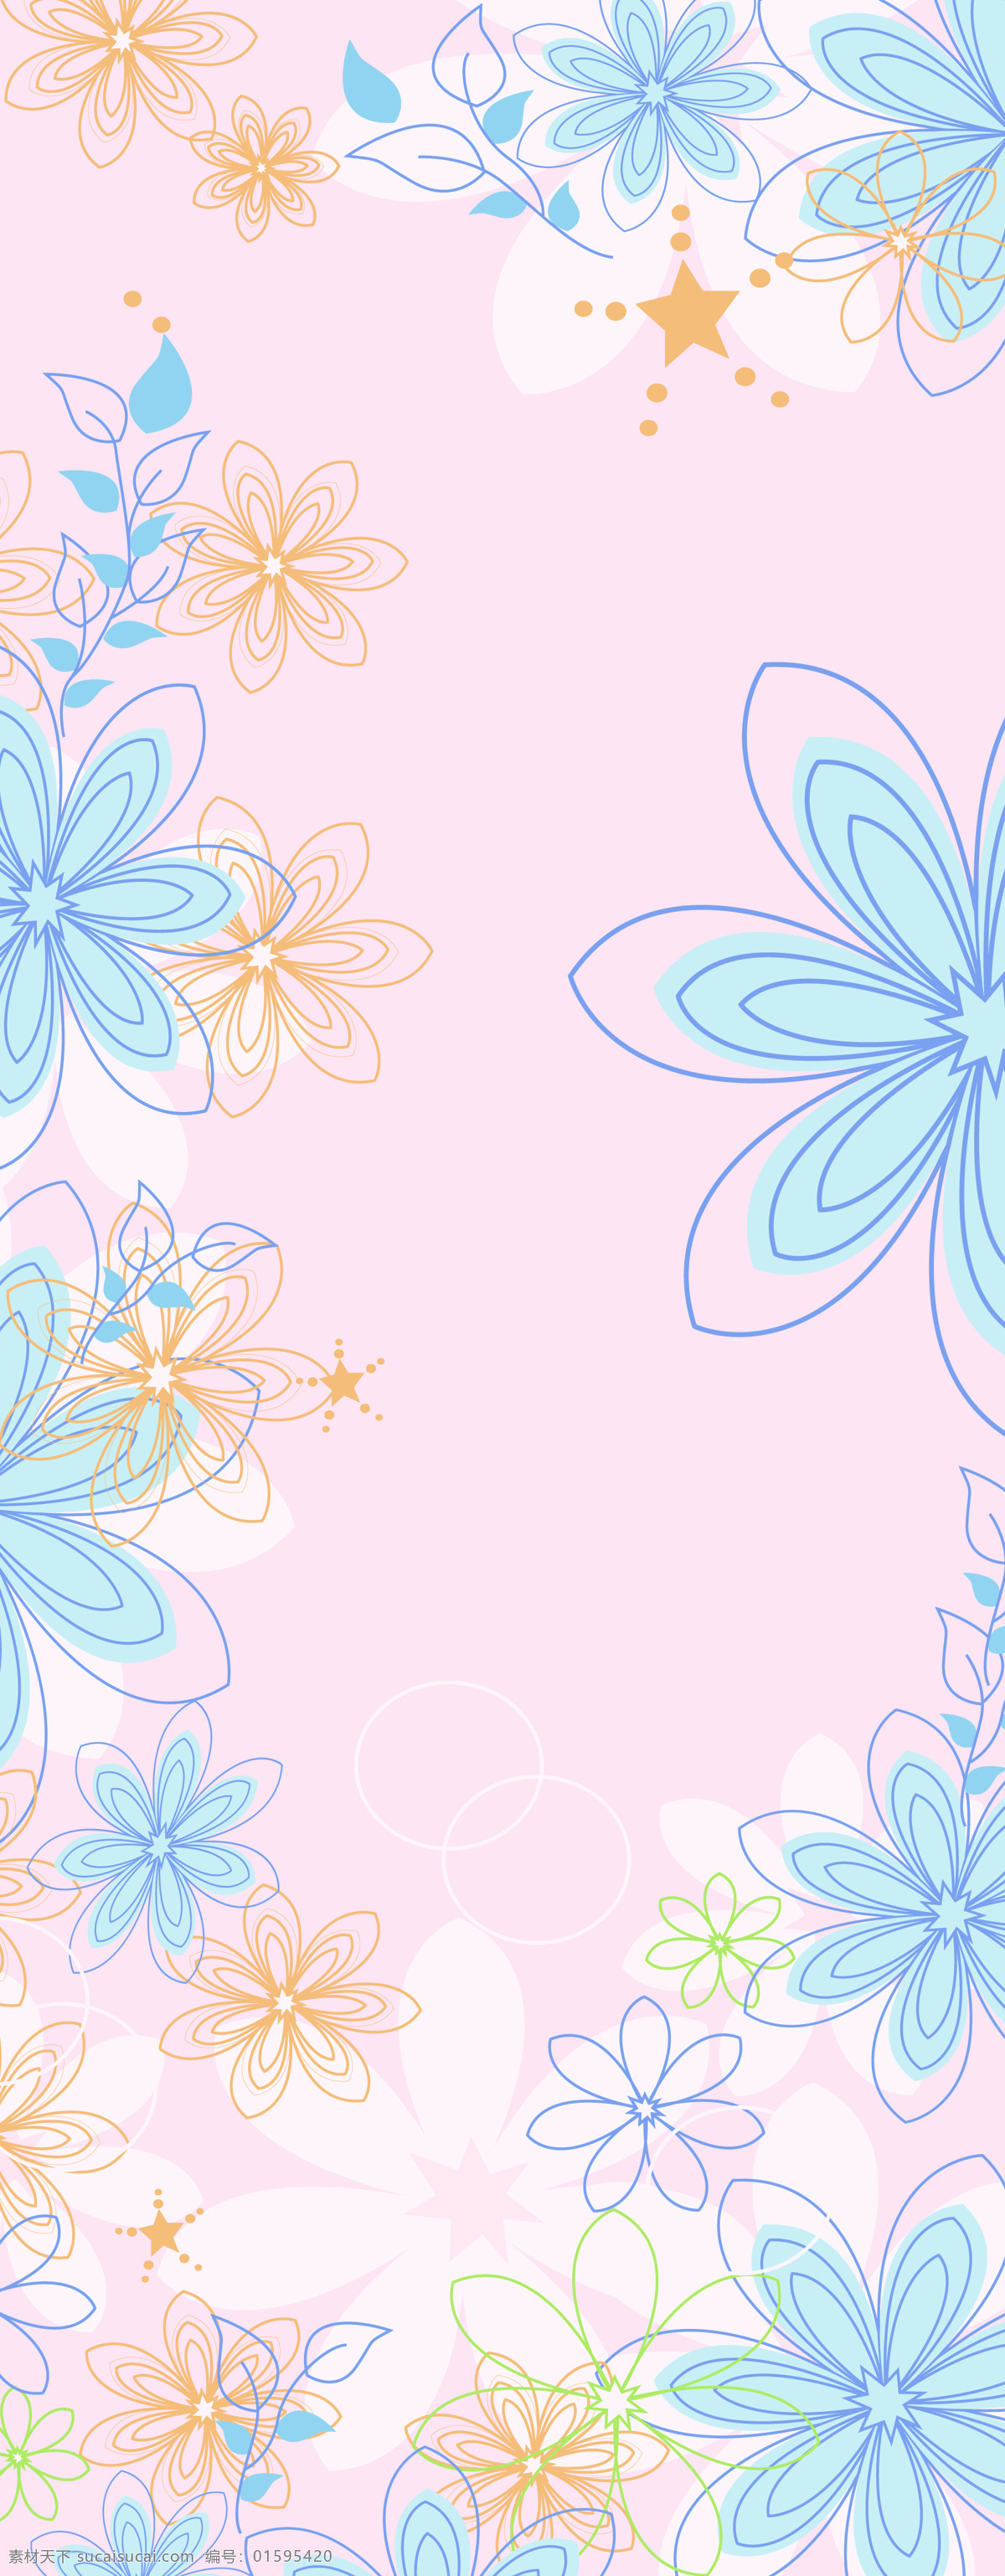 背景底纹 底纹边框 粉色 花 花朵 花儿 简单 梦幻 线条花儿 线条 叶子 五彩 移门图案 位图移门 装饰素材